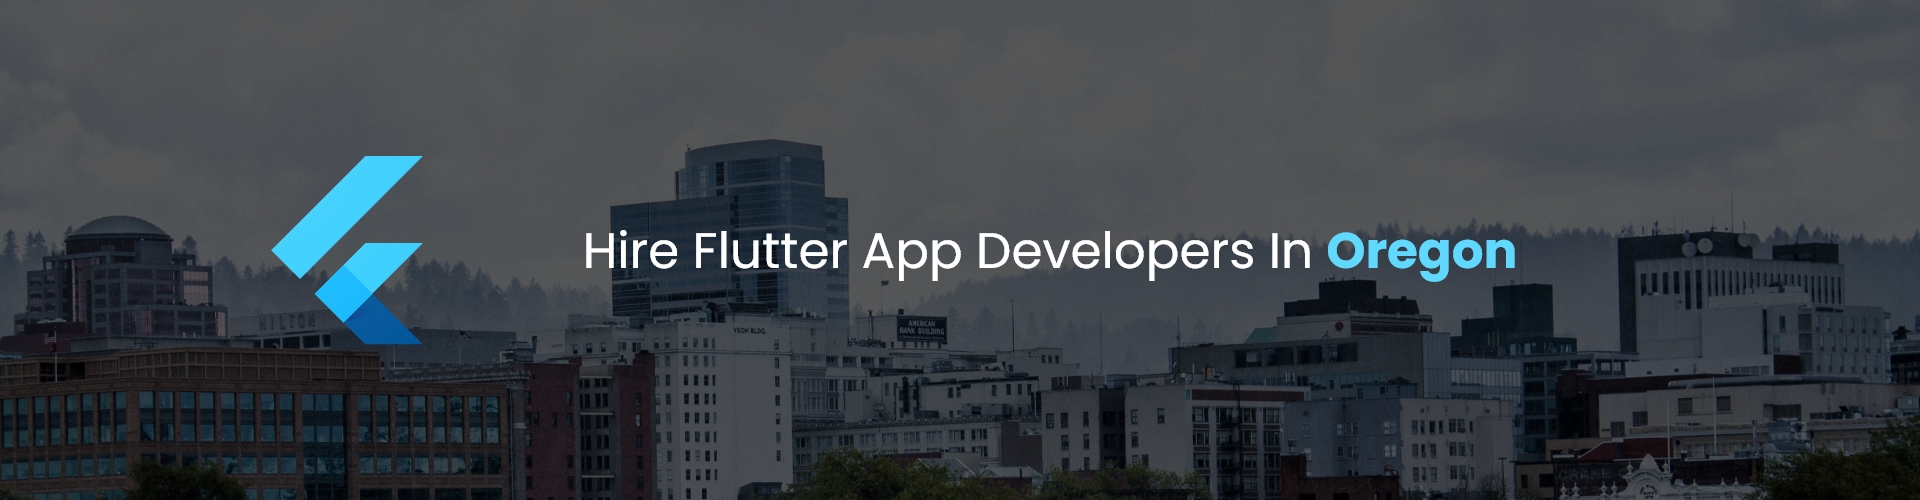 hire flutter app developers in oregon